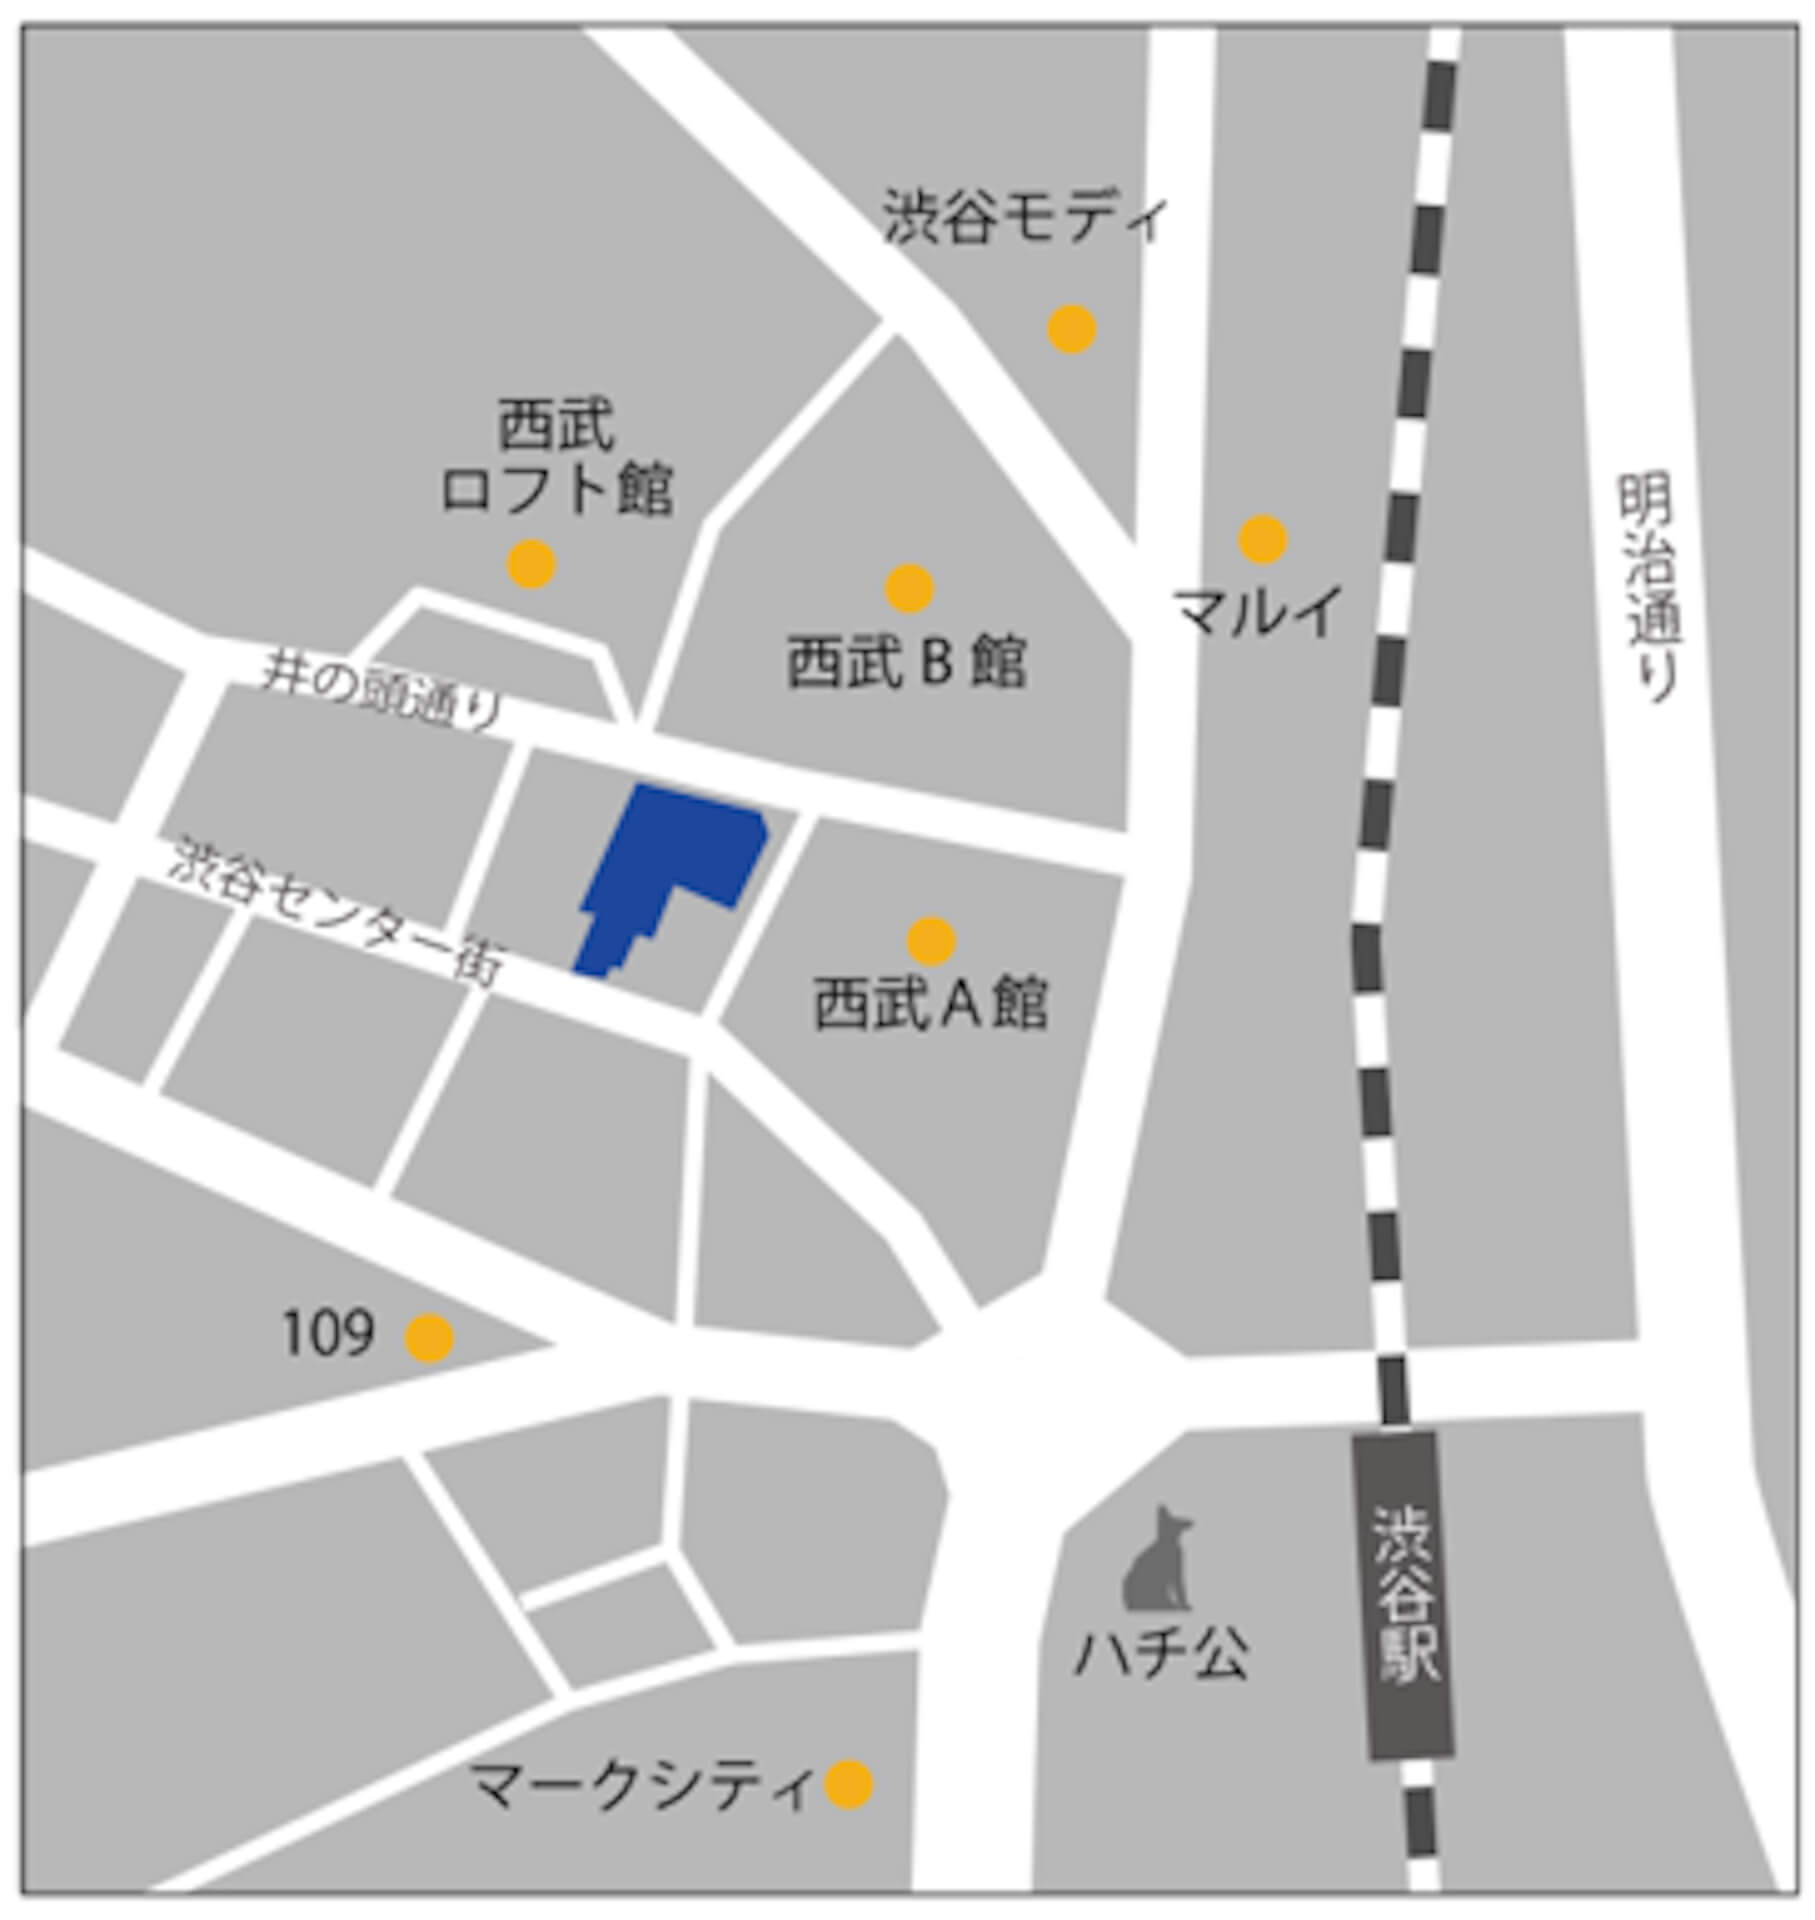 渋谷スクランブル交差点付近にIKEAが上陸！IKEA渋谷が2020年冬開業決定 life200616_ikea_shibuya_2